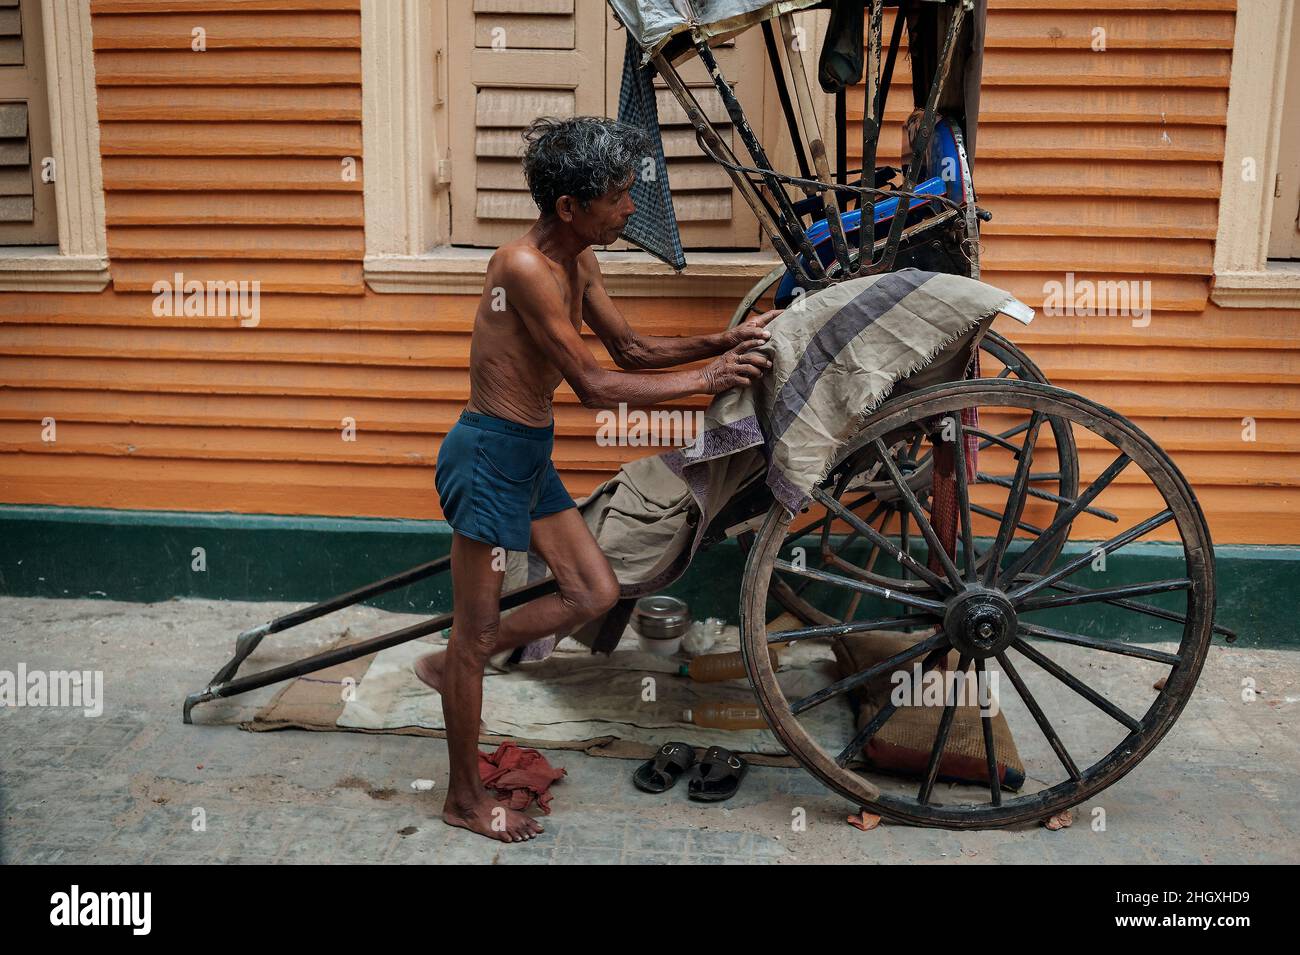 Eine gezogene Rikscha, ein Transportmodus, bei dem ein Läufer einen zweirädrigen Wagen zieht, in dem ein oder zwei Personen Platz finden. Kalkutta, Indien Stockfoto